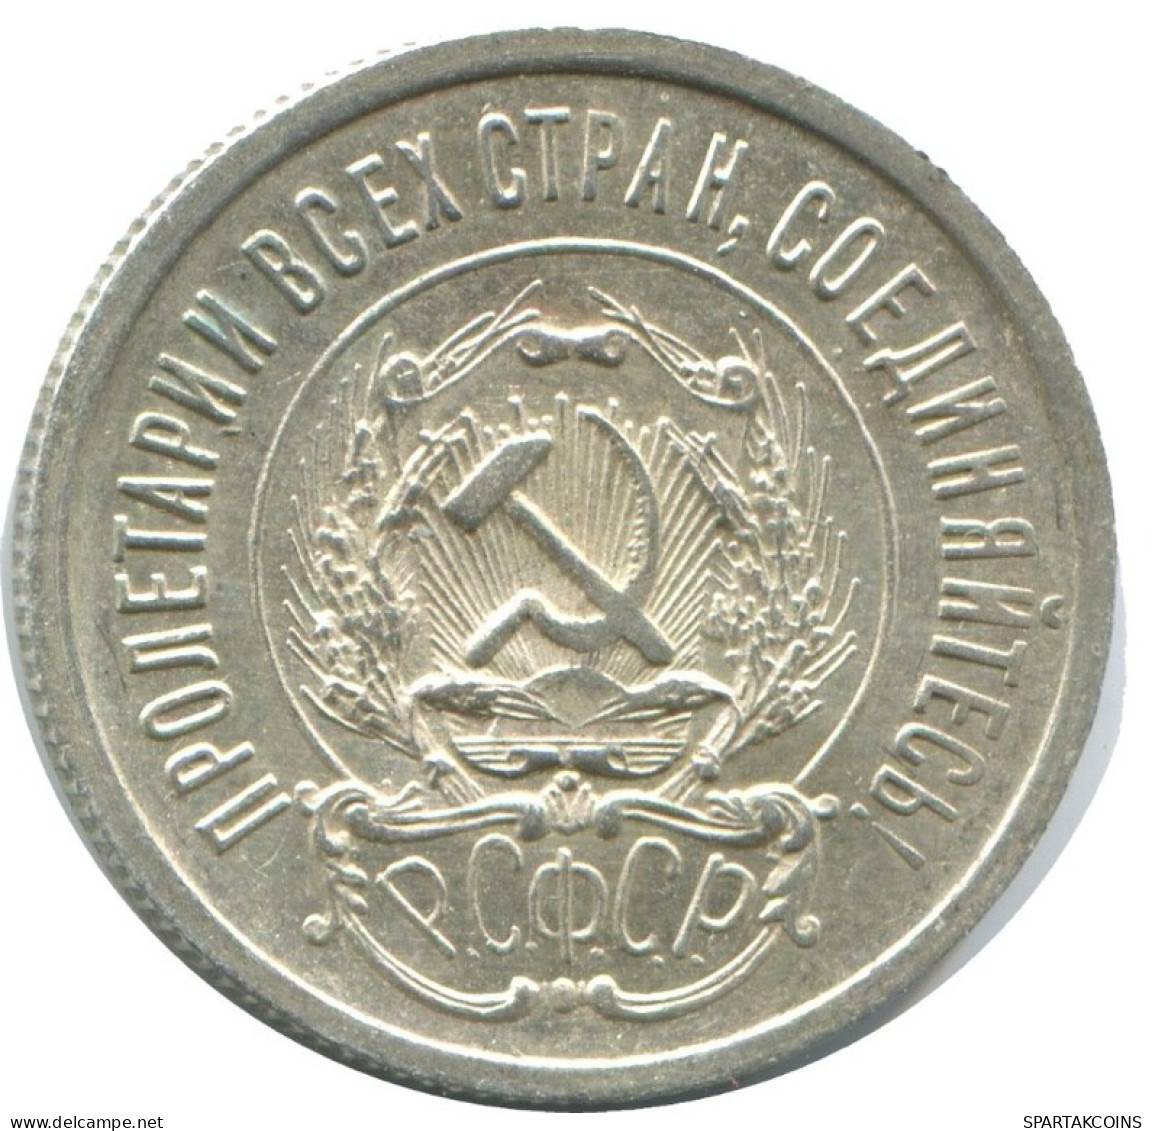 20 KOPEKS 1923 RUSSLAND RUSSIA RSFSR SILBER Münze HIGH GRADE #AF699.D.A - Russia